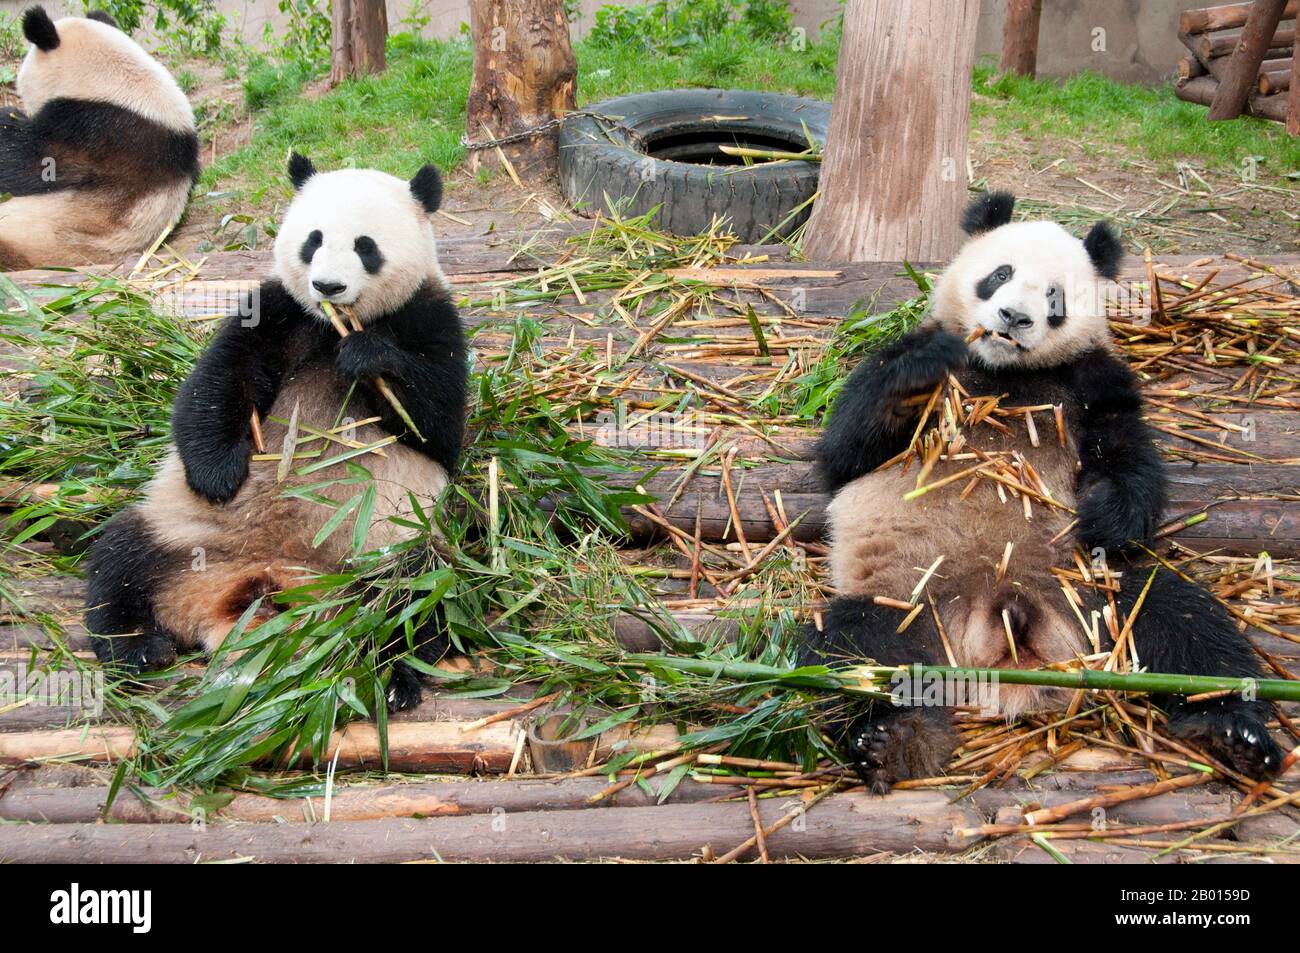 Chine : Pandas géants, base de recherche sur la reproduction des pandas géants, Chengdu, province du Sichuan. Le panda géant, ou panda (Ailuropoda melanoleuca, littéralement «pied-chat noir et blanc») est un ours originaire du centre-ouest et du sud-ouest de la Chine. Il est facilement reconnu par ses grandes taches noires distinctives autour des yeux, sur les oreilles et sur son corps rond. Bien qu'il appartient à l'ordre Carnivora, le régime du panda est 99% bambou. Banque D'Images